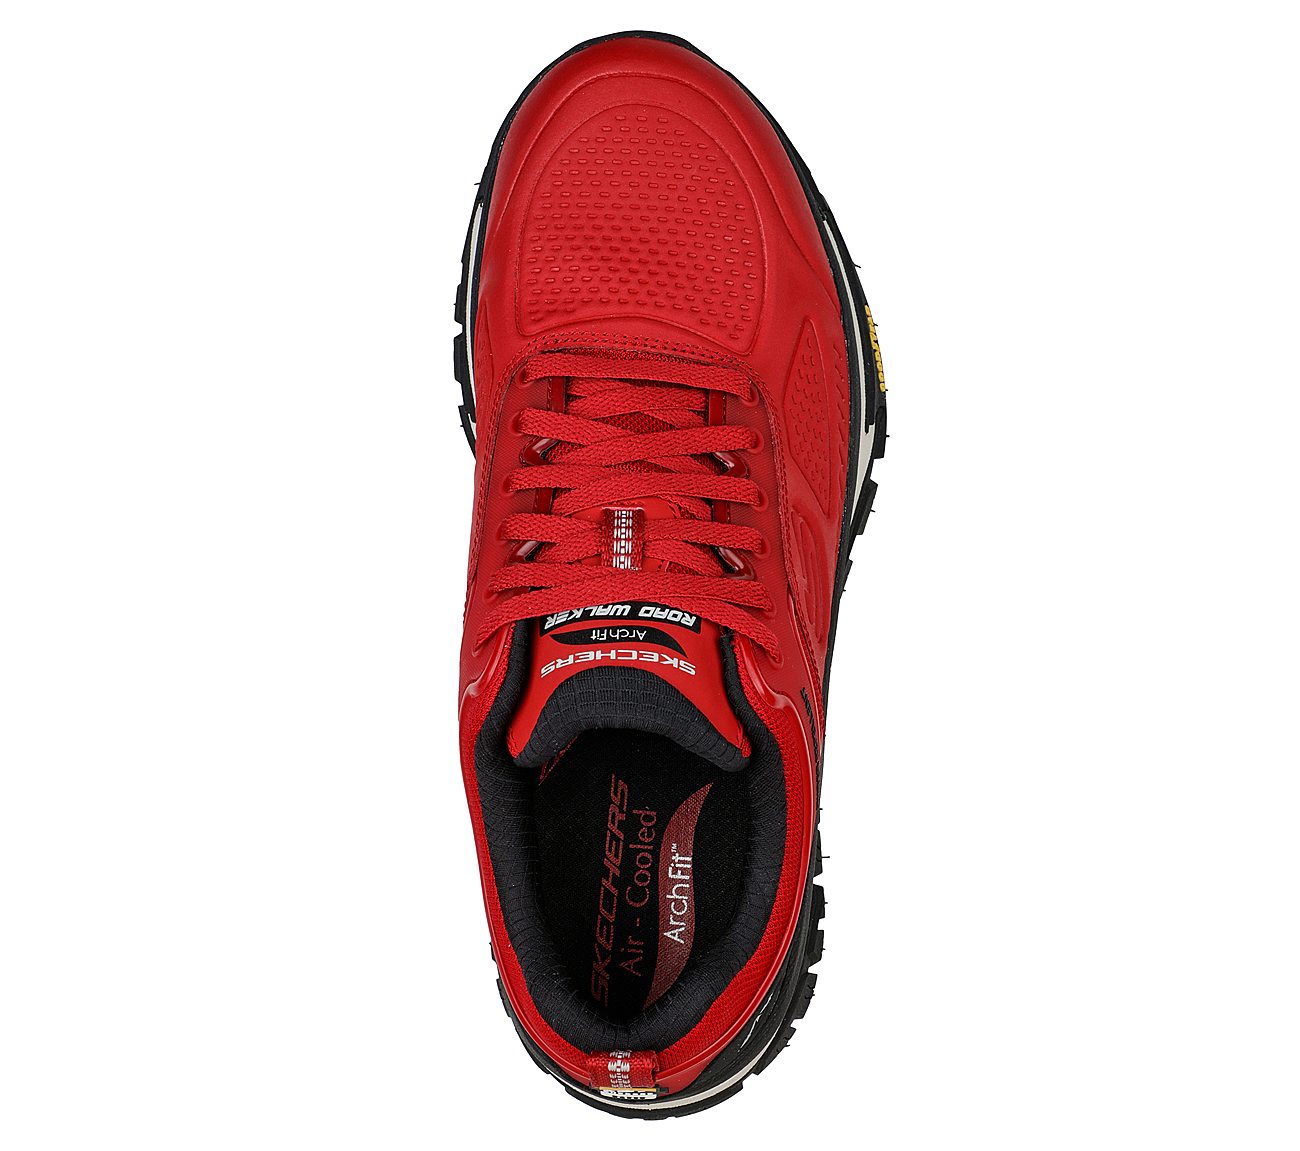 ARCH FIT ROAD WALKER, RED/BLACK Footwear Top View